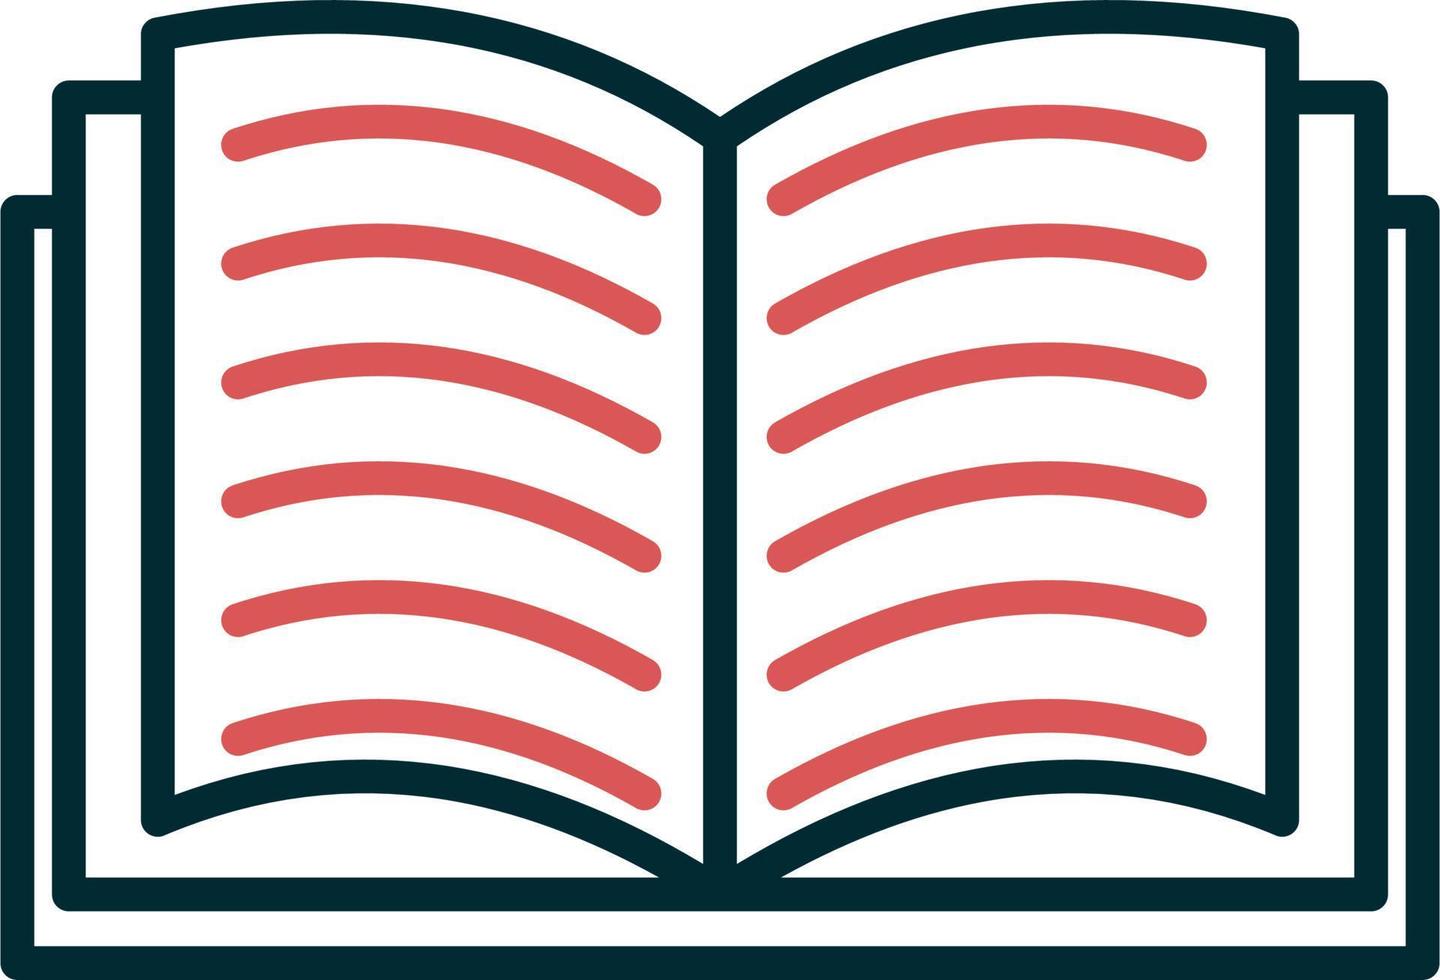 ícone de vetor de livros